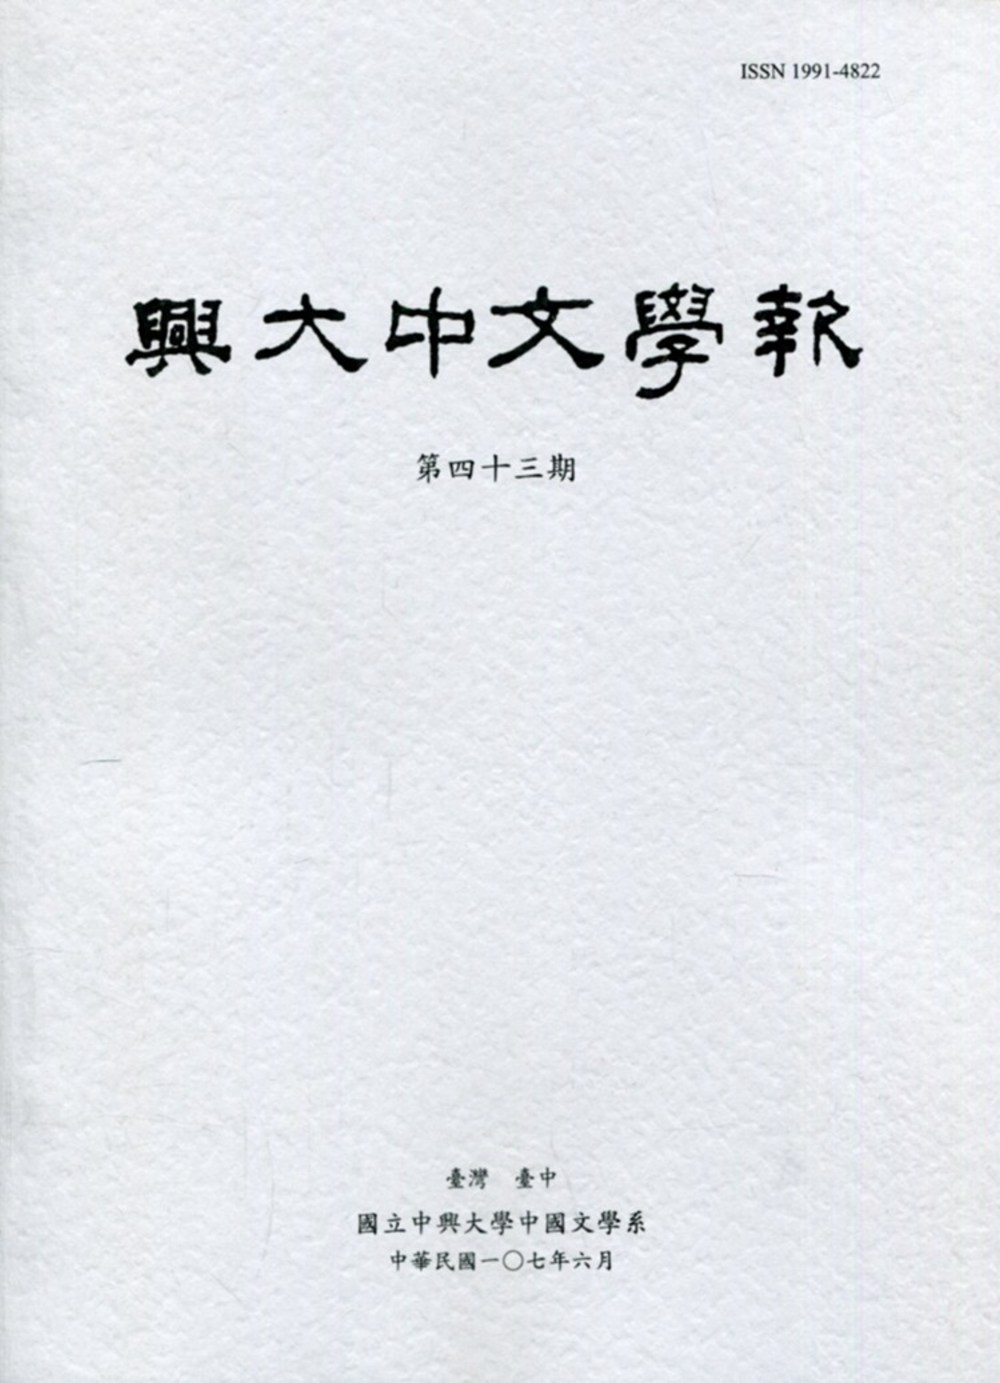 興大中文學報43期(107年6月)